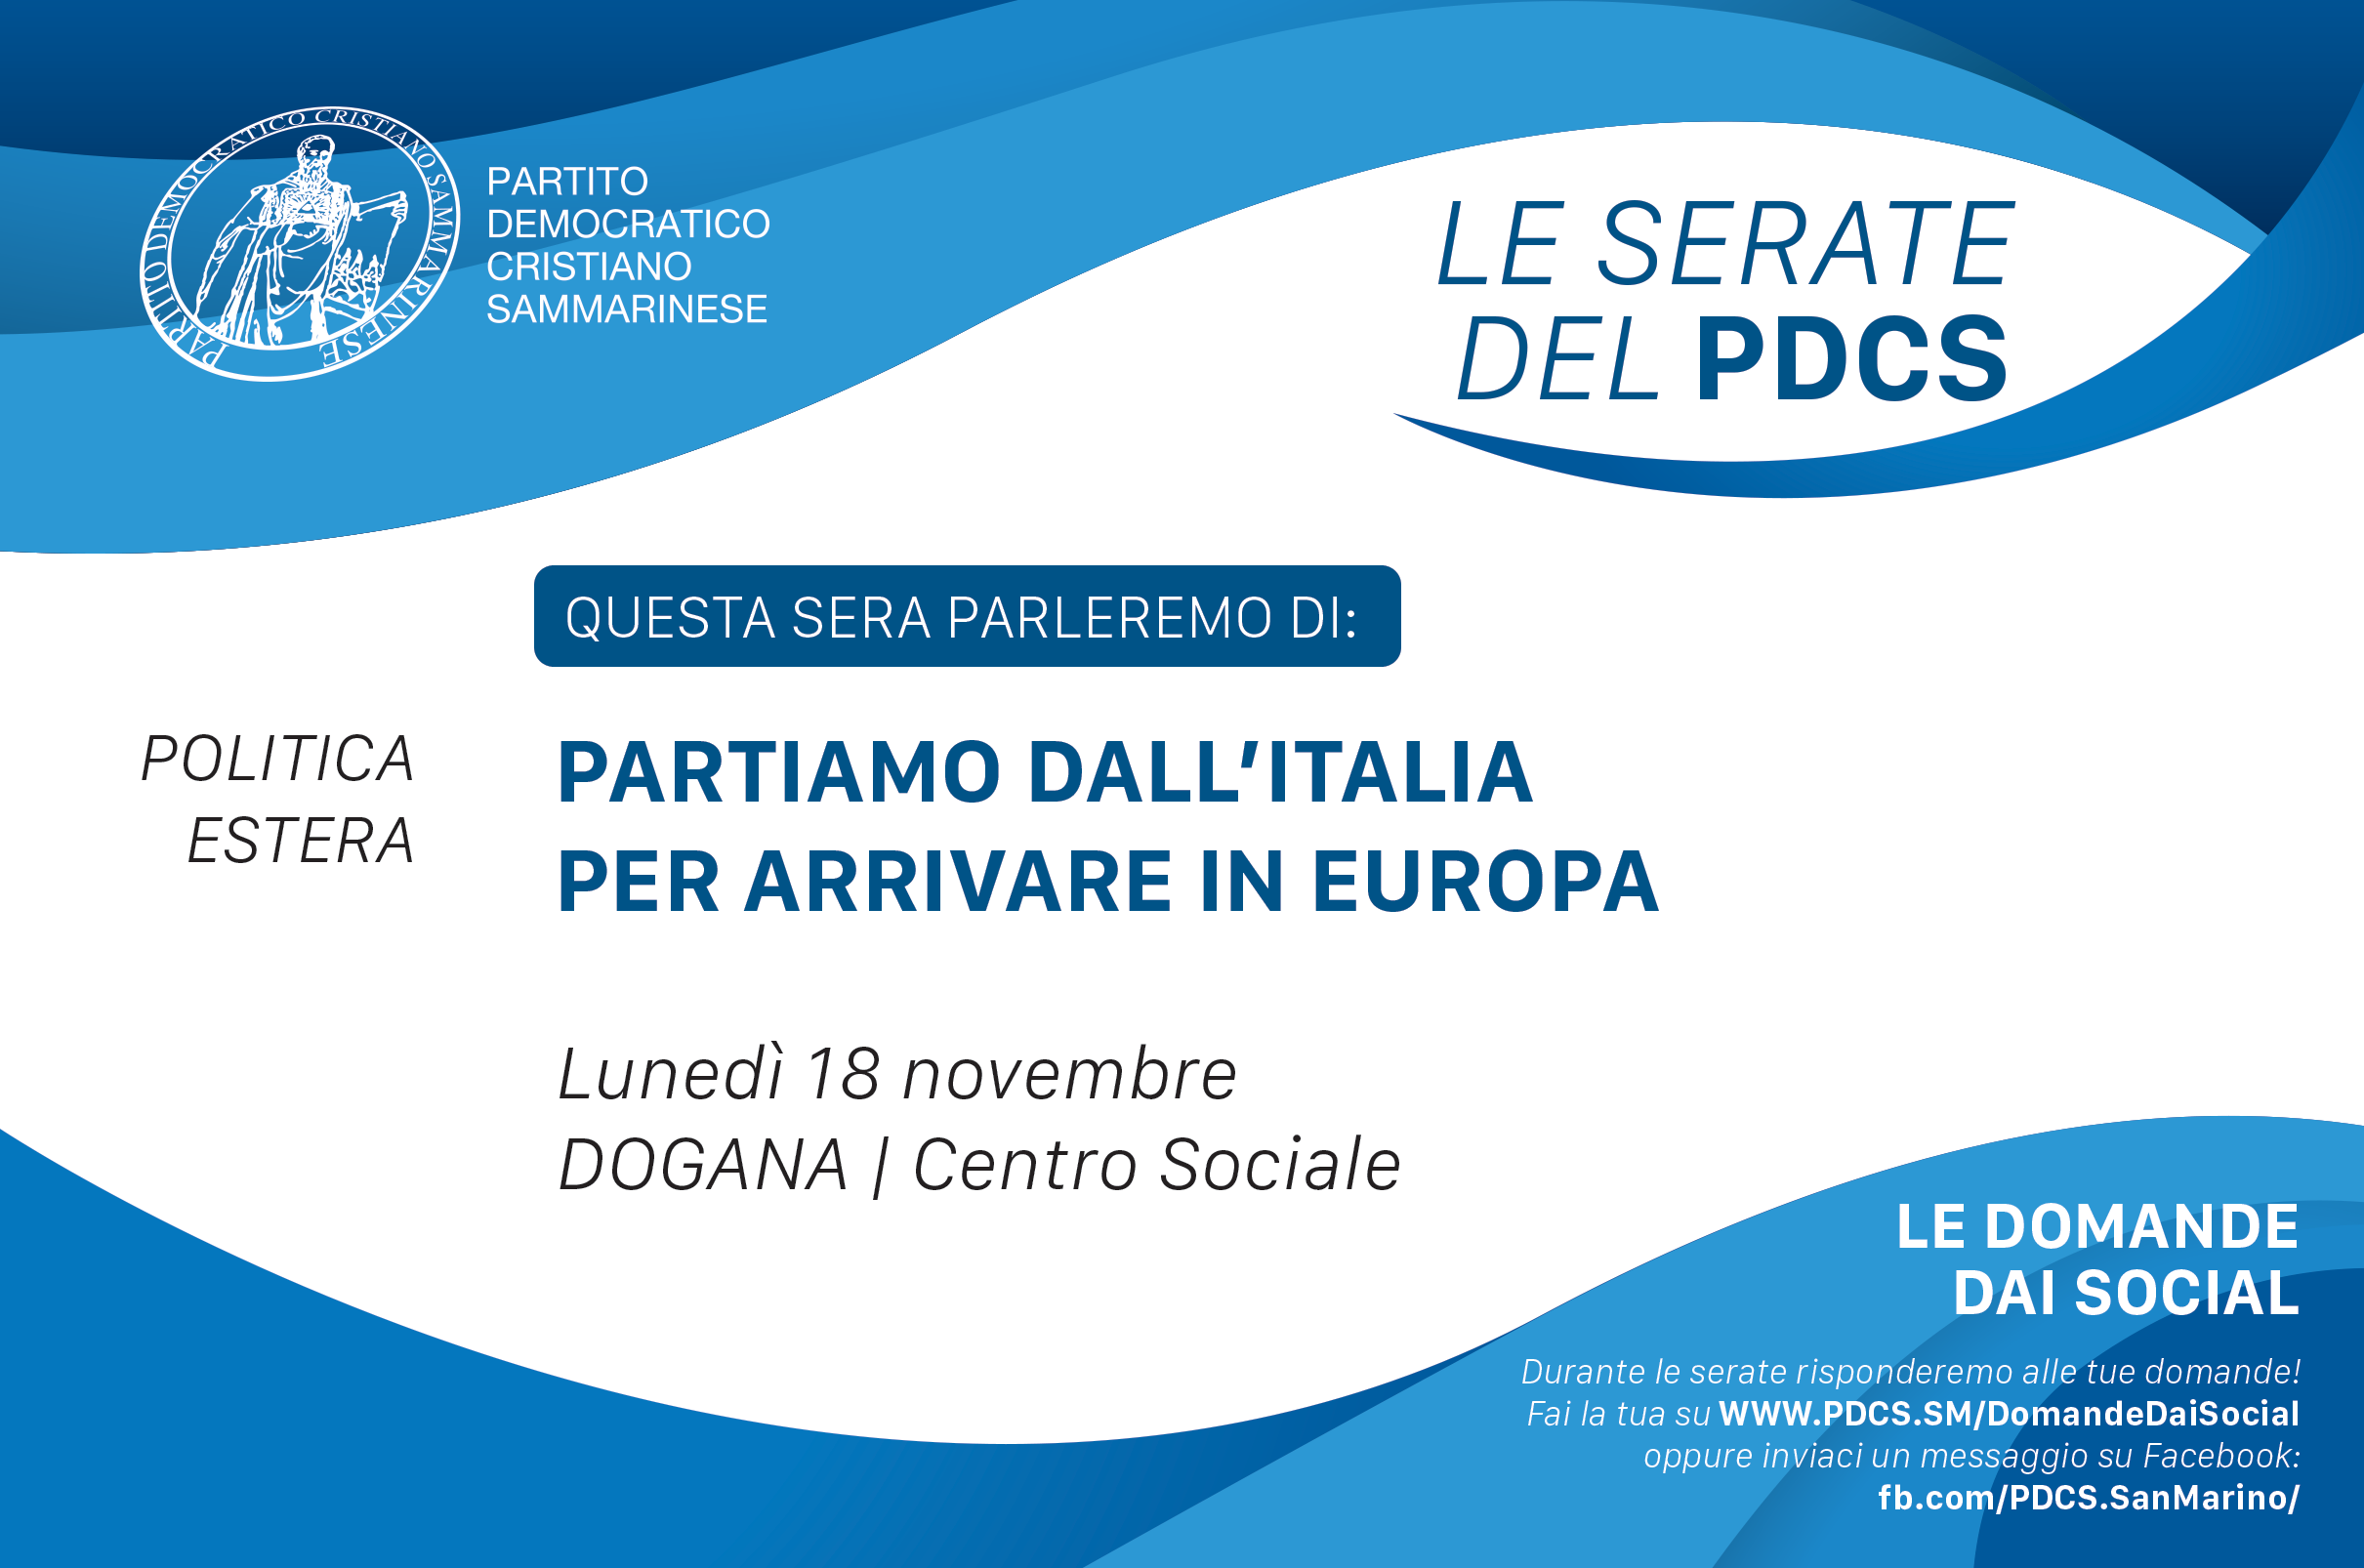 18 Novembre a Dogana: PARTIAMO DALL’ITALIA PER ARRIVARE IN EUROPA